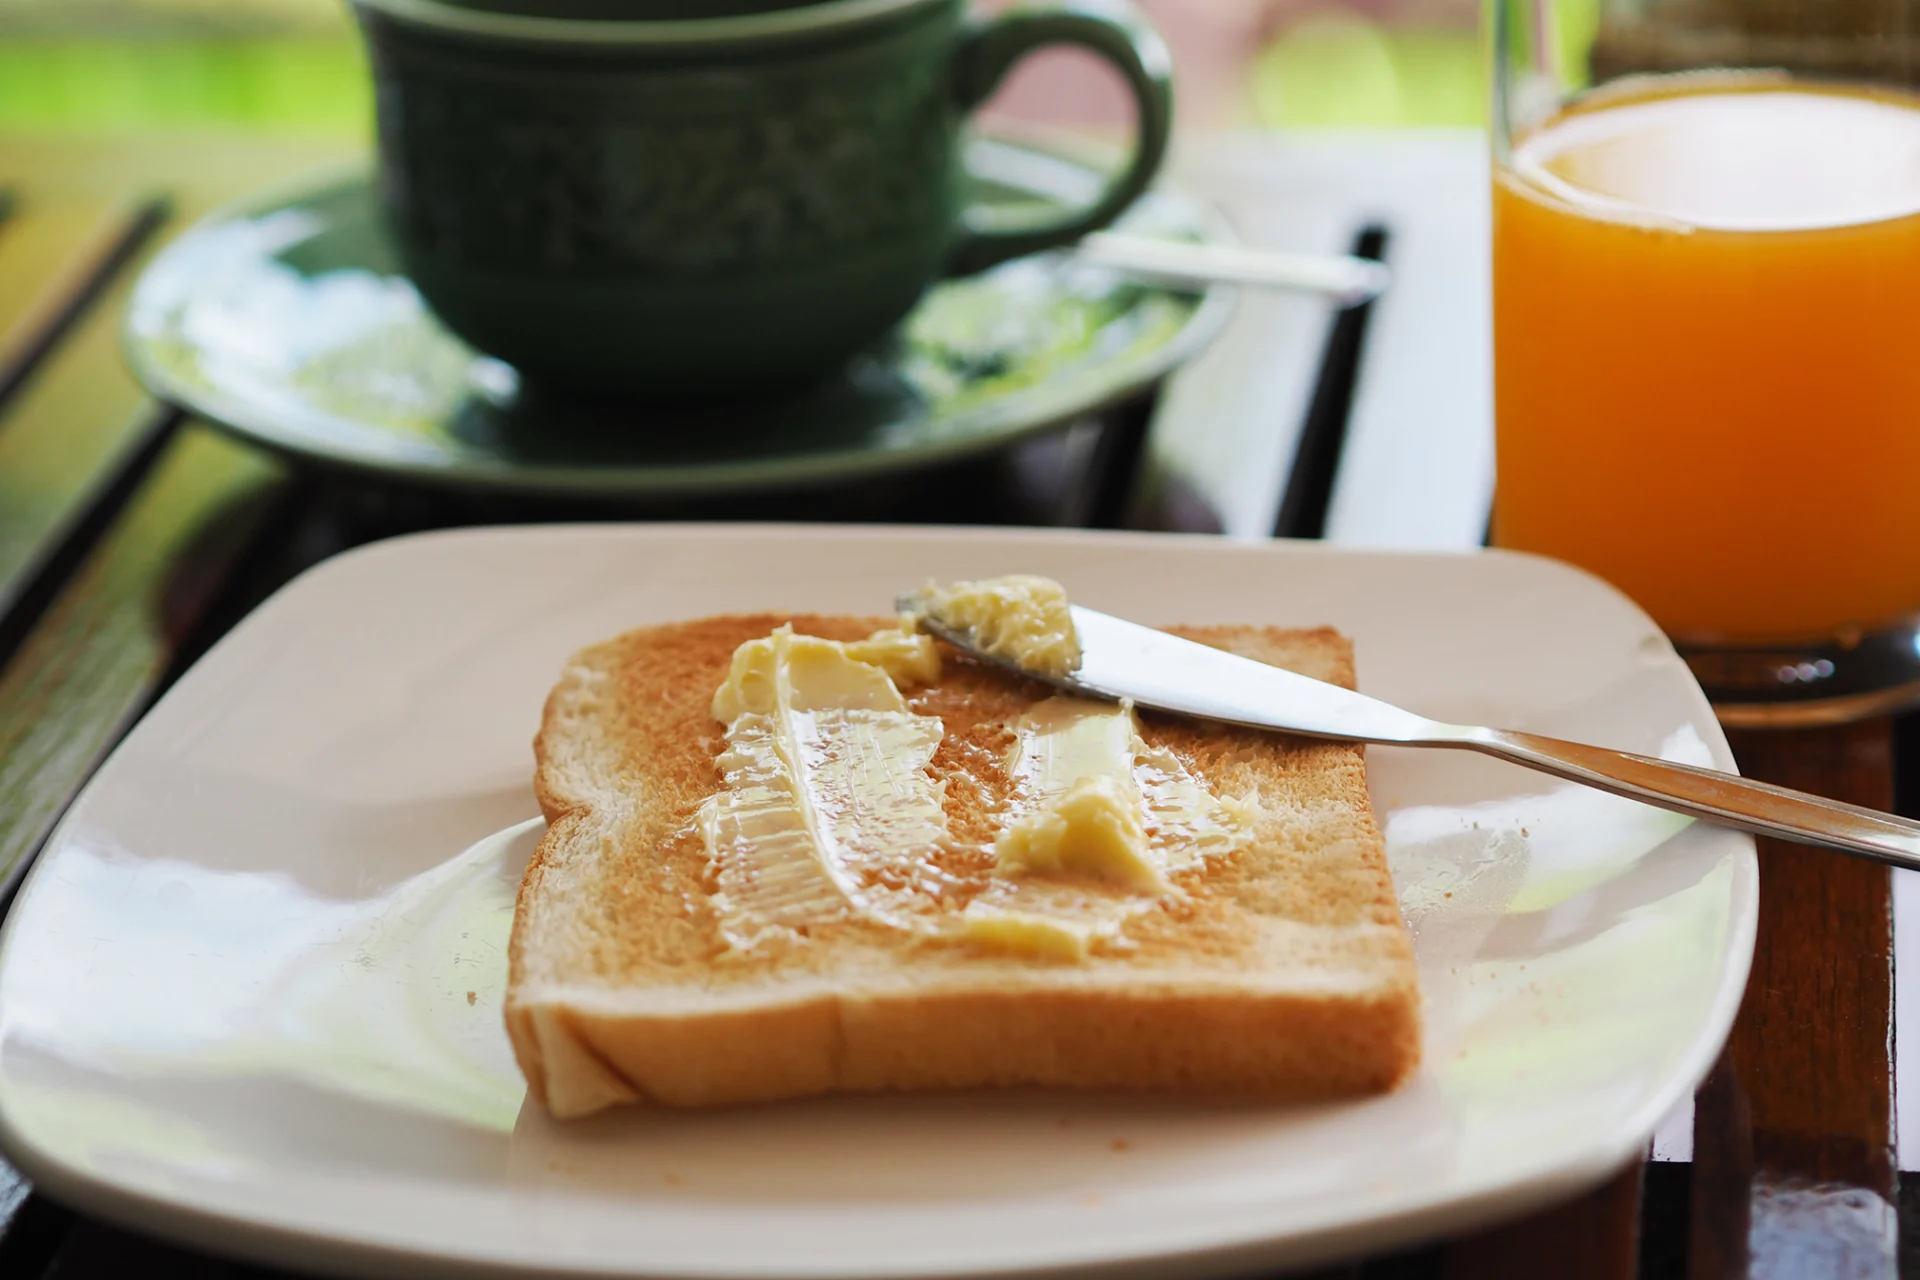 Ein mit Butter bestrichenes Toastbrot auf einem Teller. Dahinter steht eine Tasse mit einem Heissgetränk sowie ein Orangensaft.